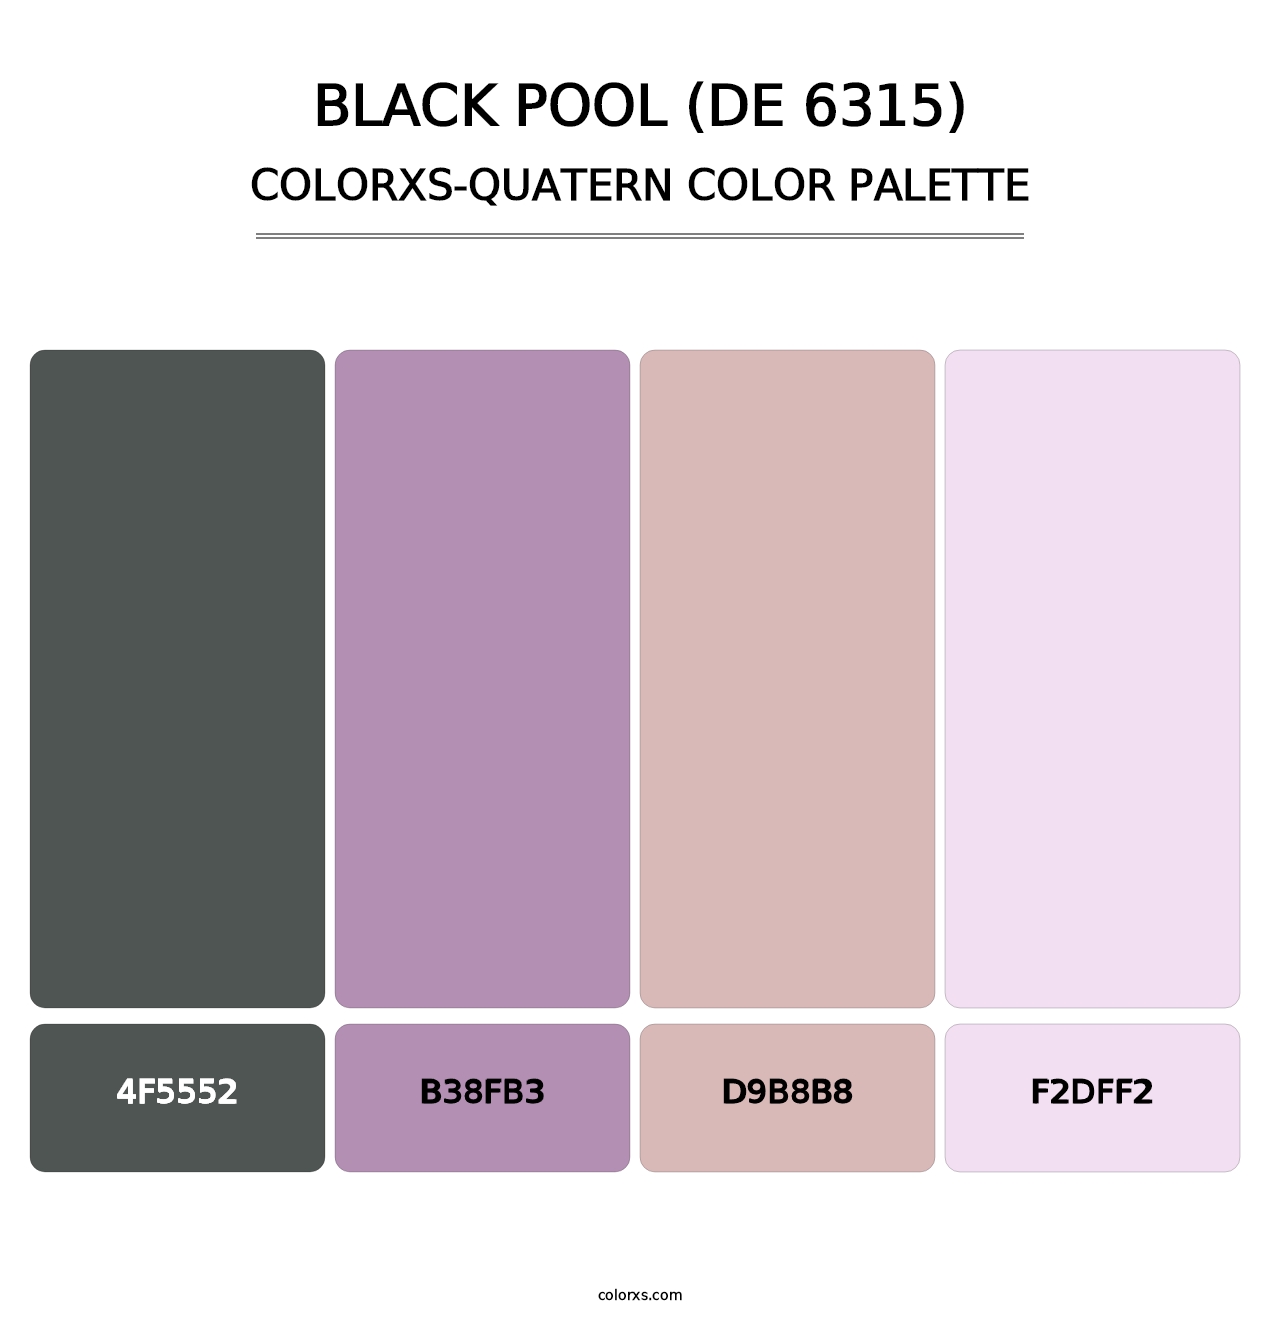 Black Pool (DE 6315) - Colorxs Quatern Palette